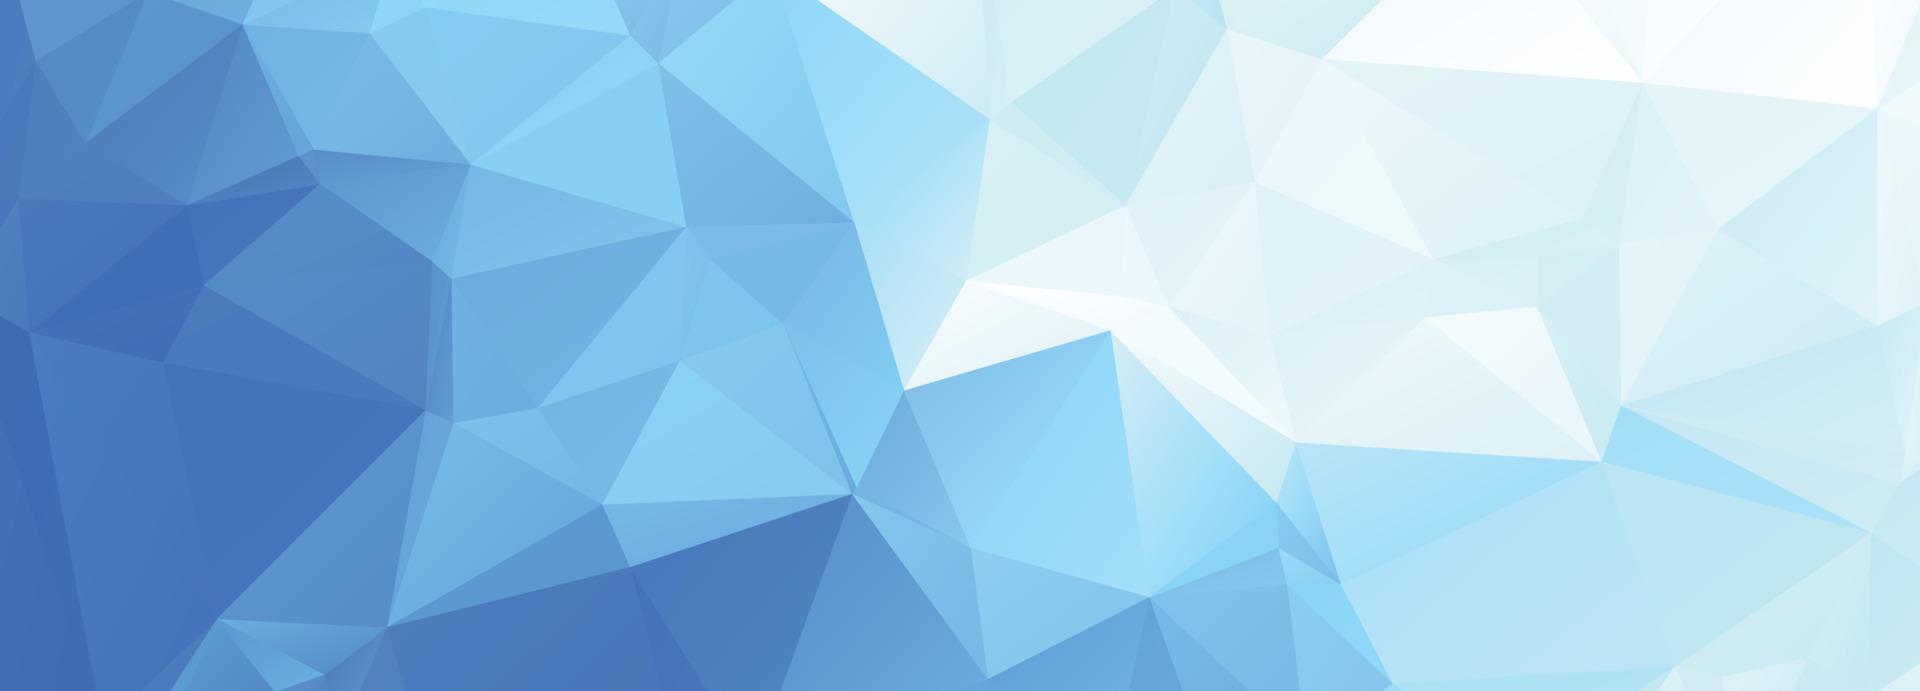 moderne blauwe laag poly driehoek vormen banner achtergrond vector